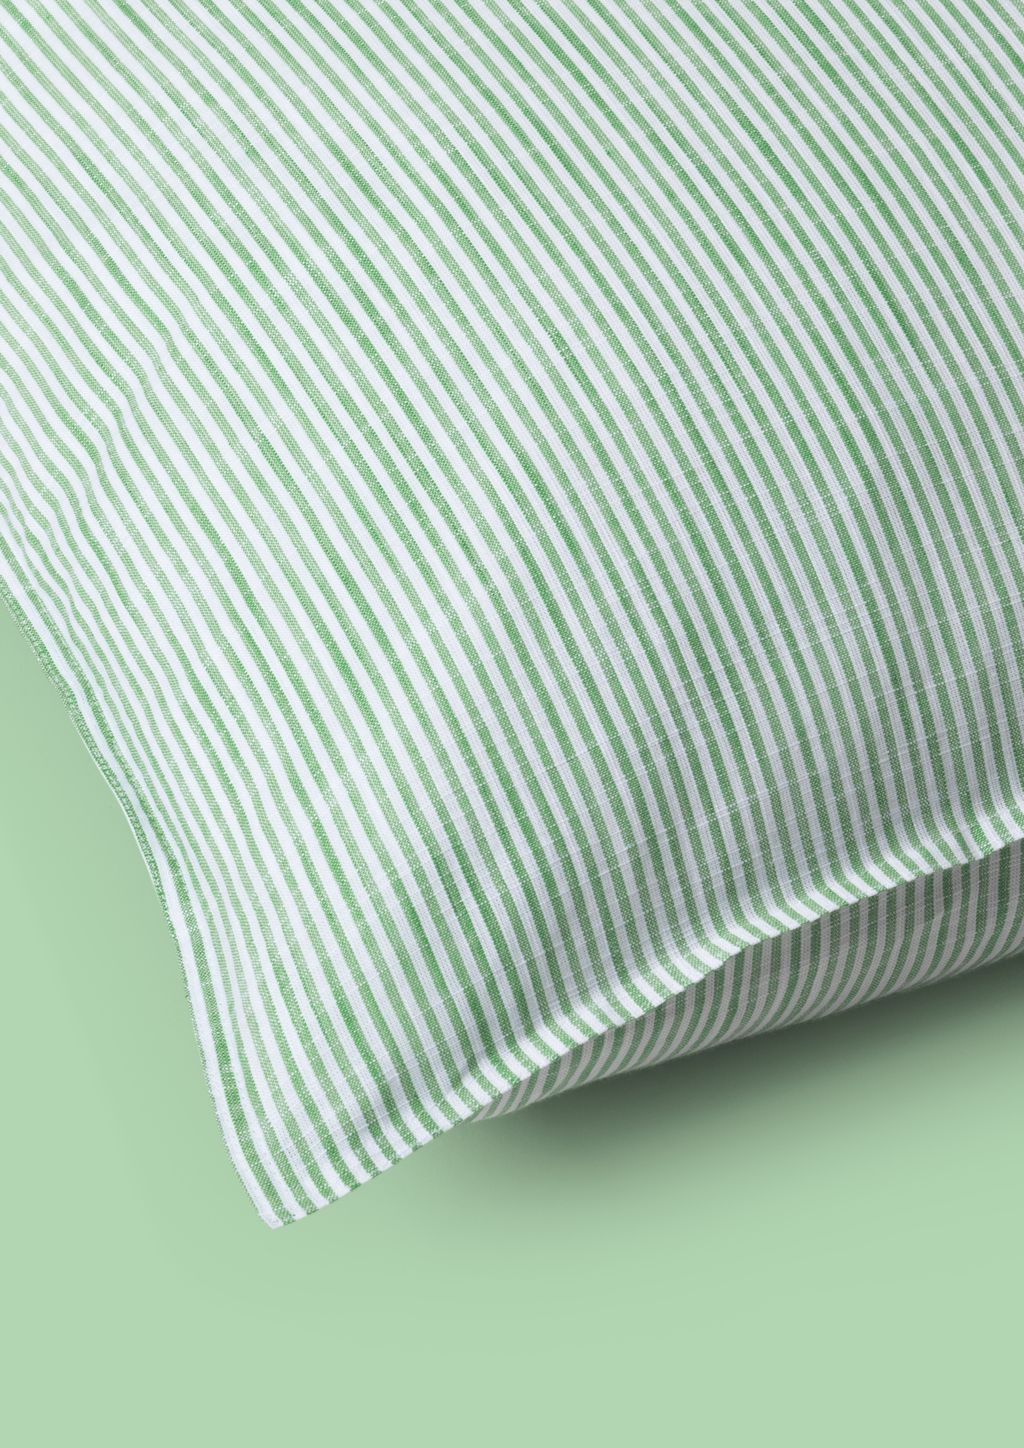 Juna Monochrome Lines Kissenbedeckung 63 x60 cm, grün/weiß